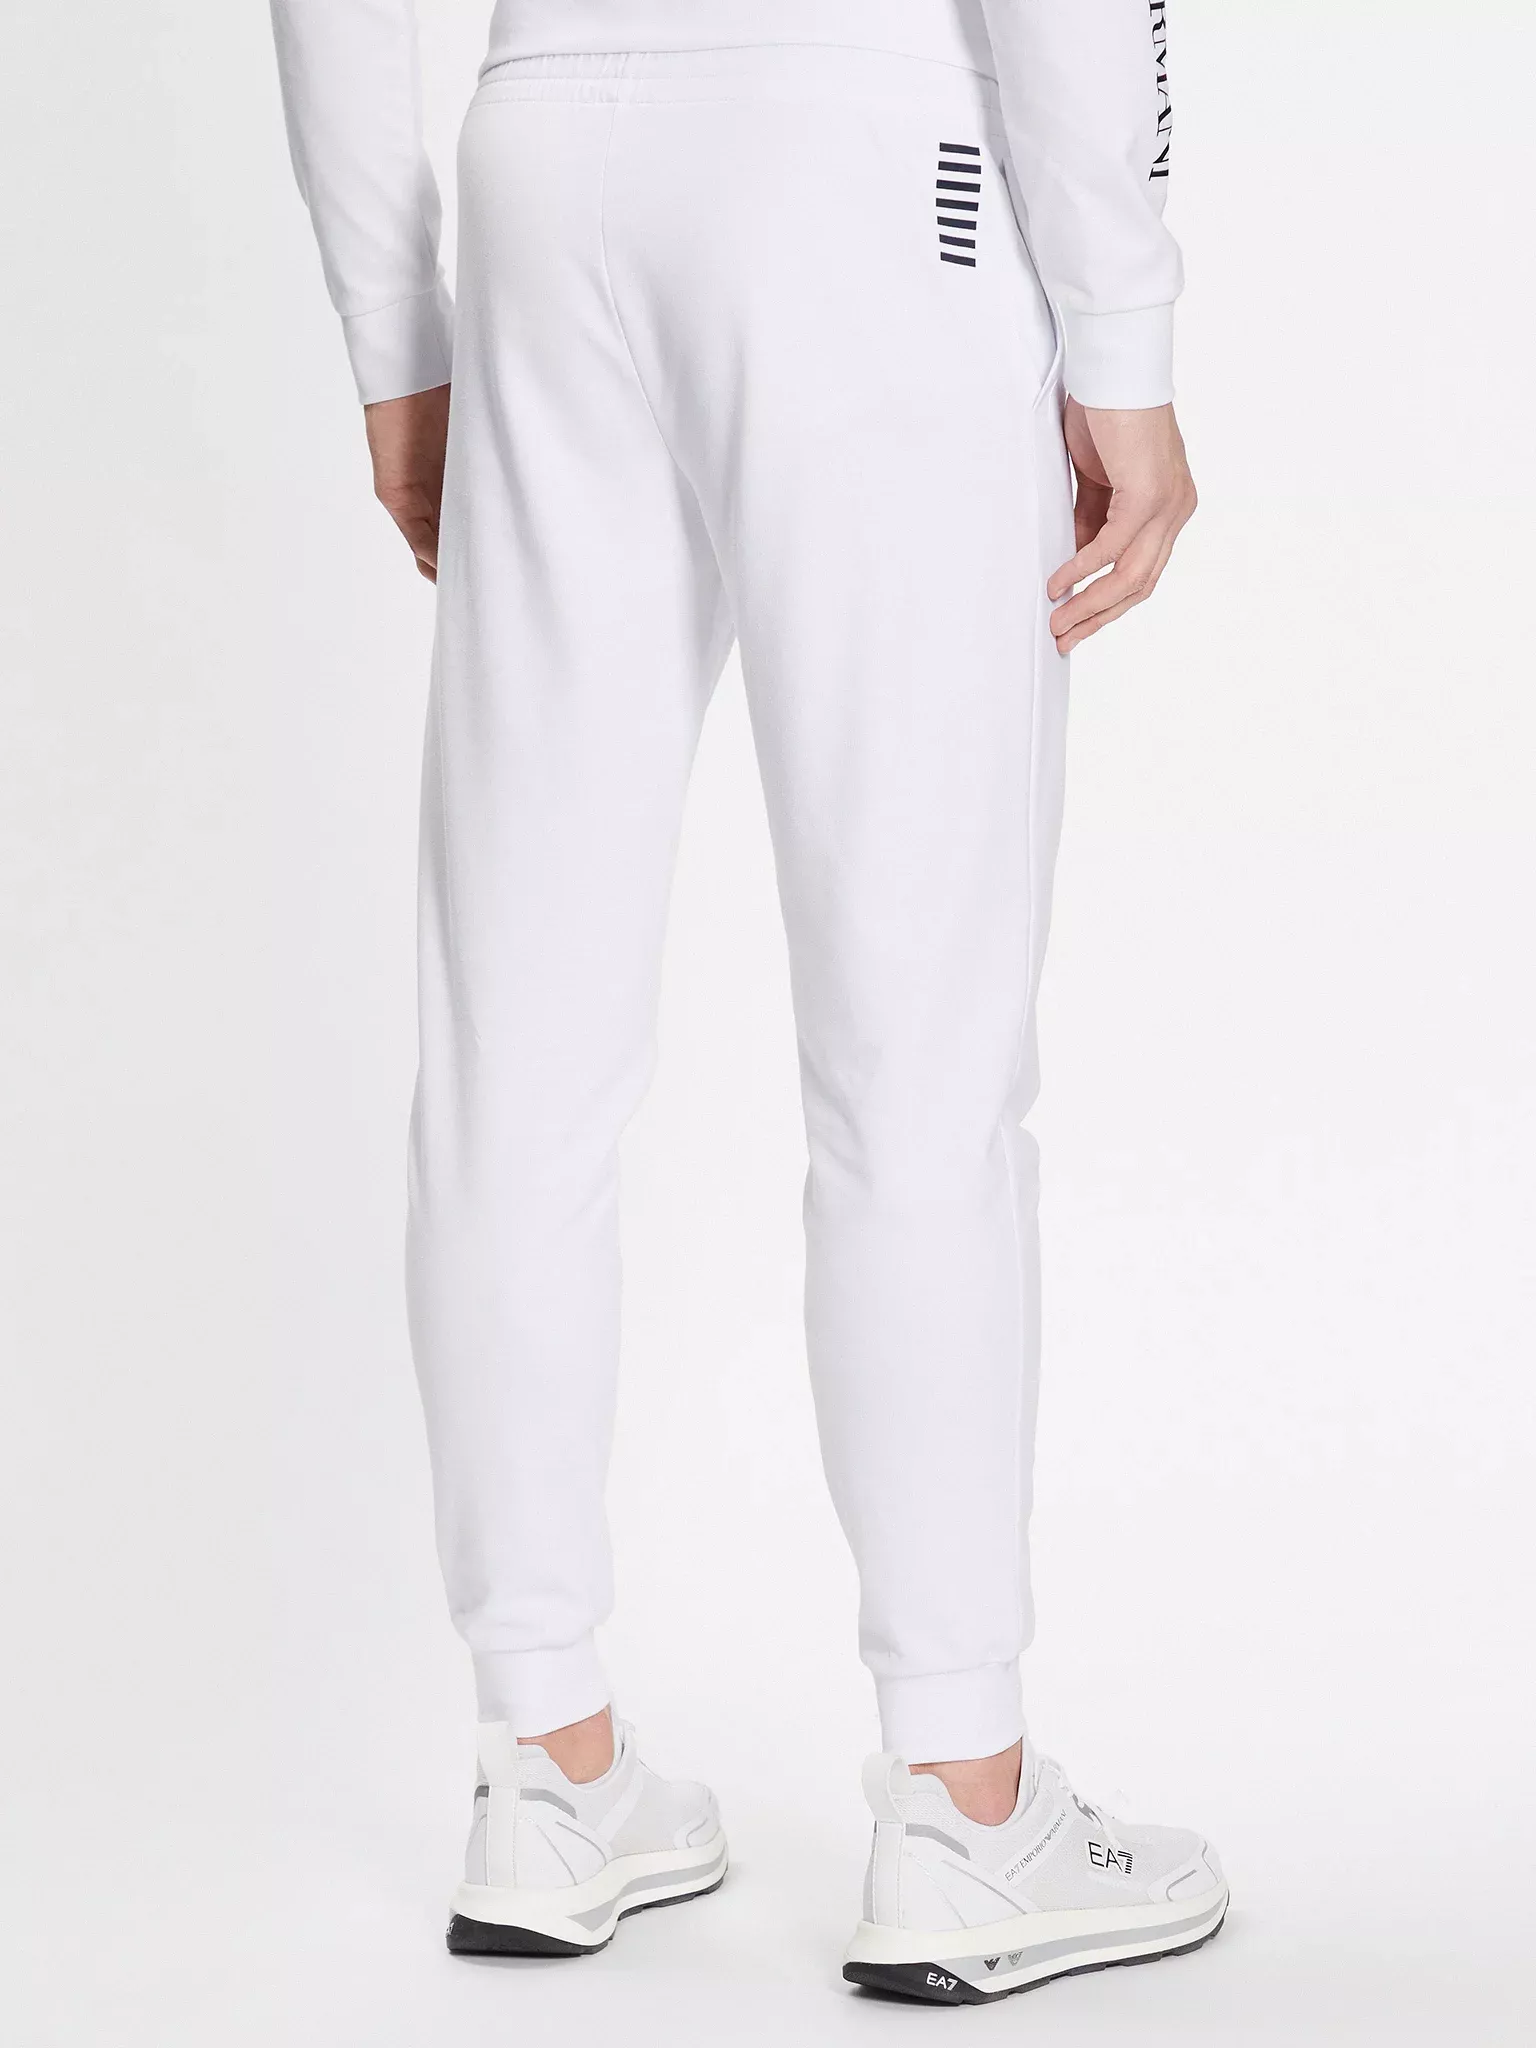 Pantalons sport/streetwear  Ea7 8NPP53 PJ05Z 1100 WHITE